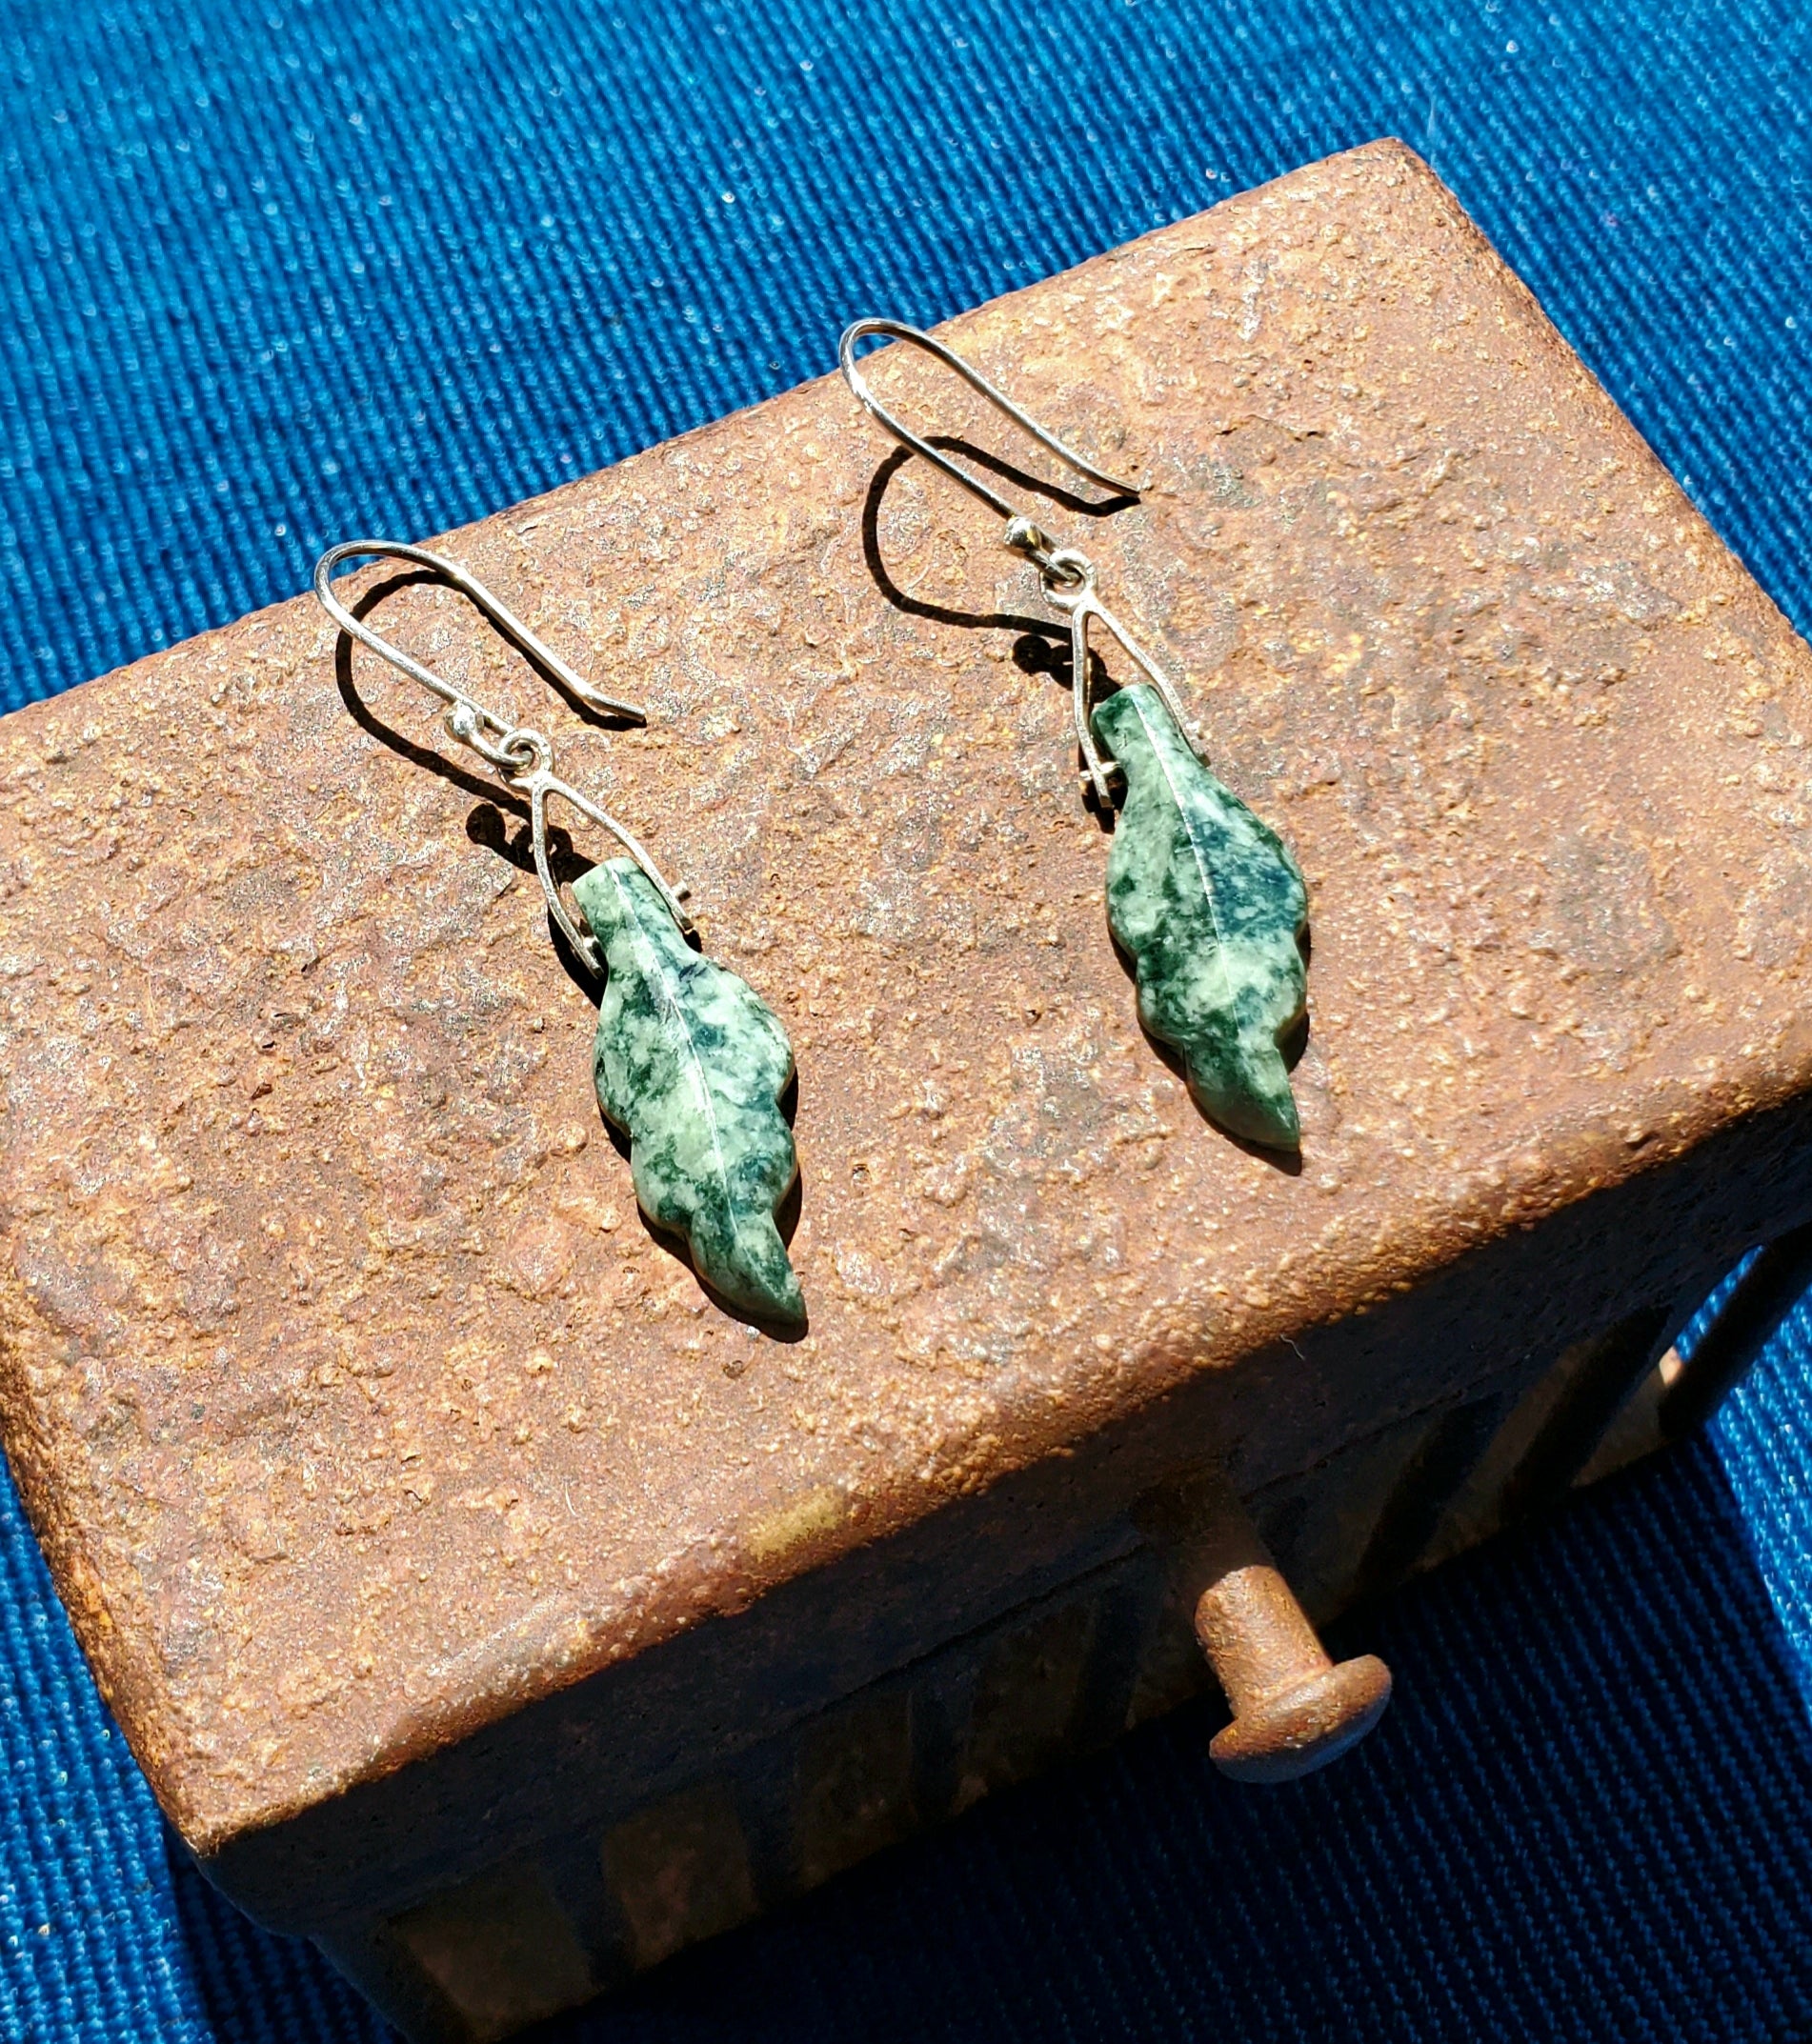 Jade earrings, mayan style jewelry, jadeite earrings, green earrings, silver and jade jewelry, texture, roasted texture, jadeite and roast, leaves earrings